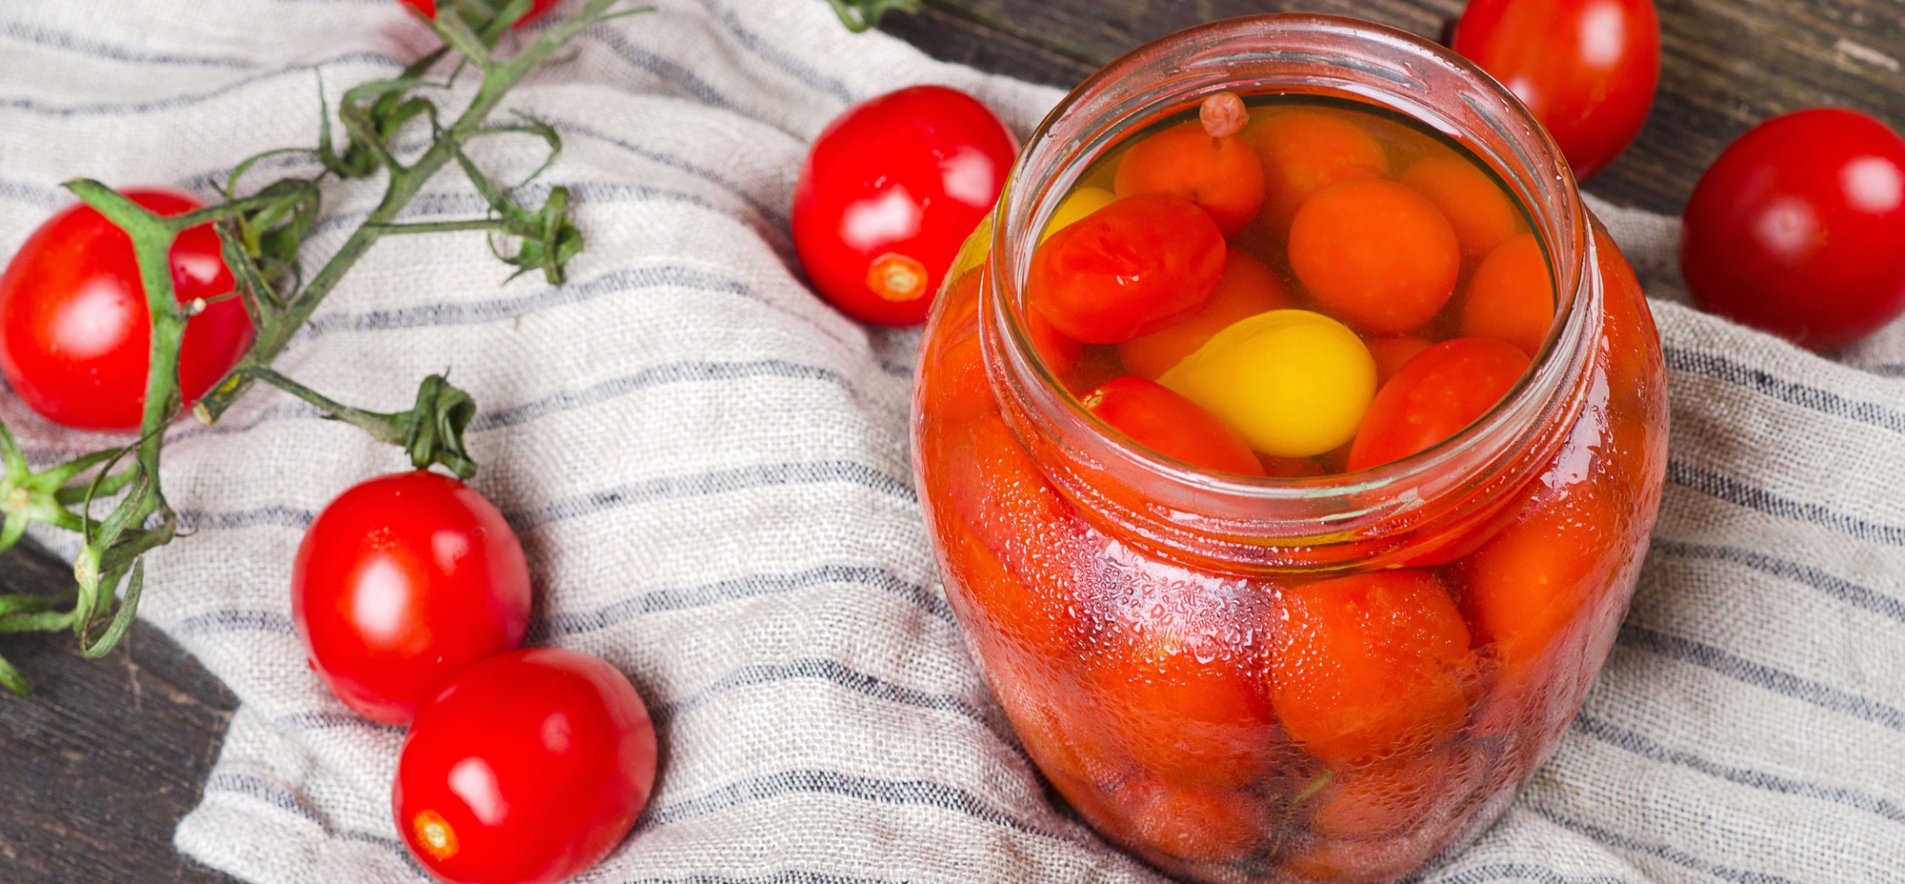 Маринованные помидоры на зиму: простой рецепт